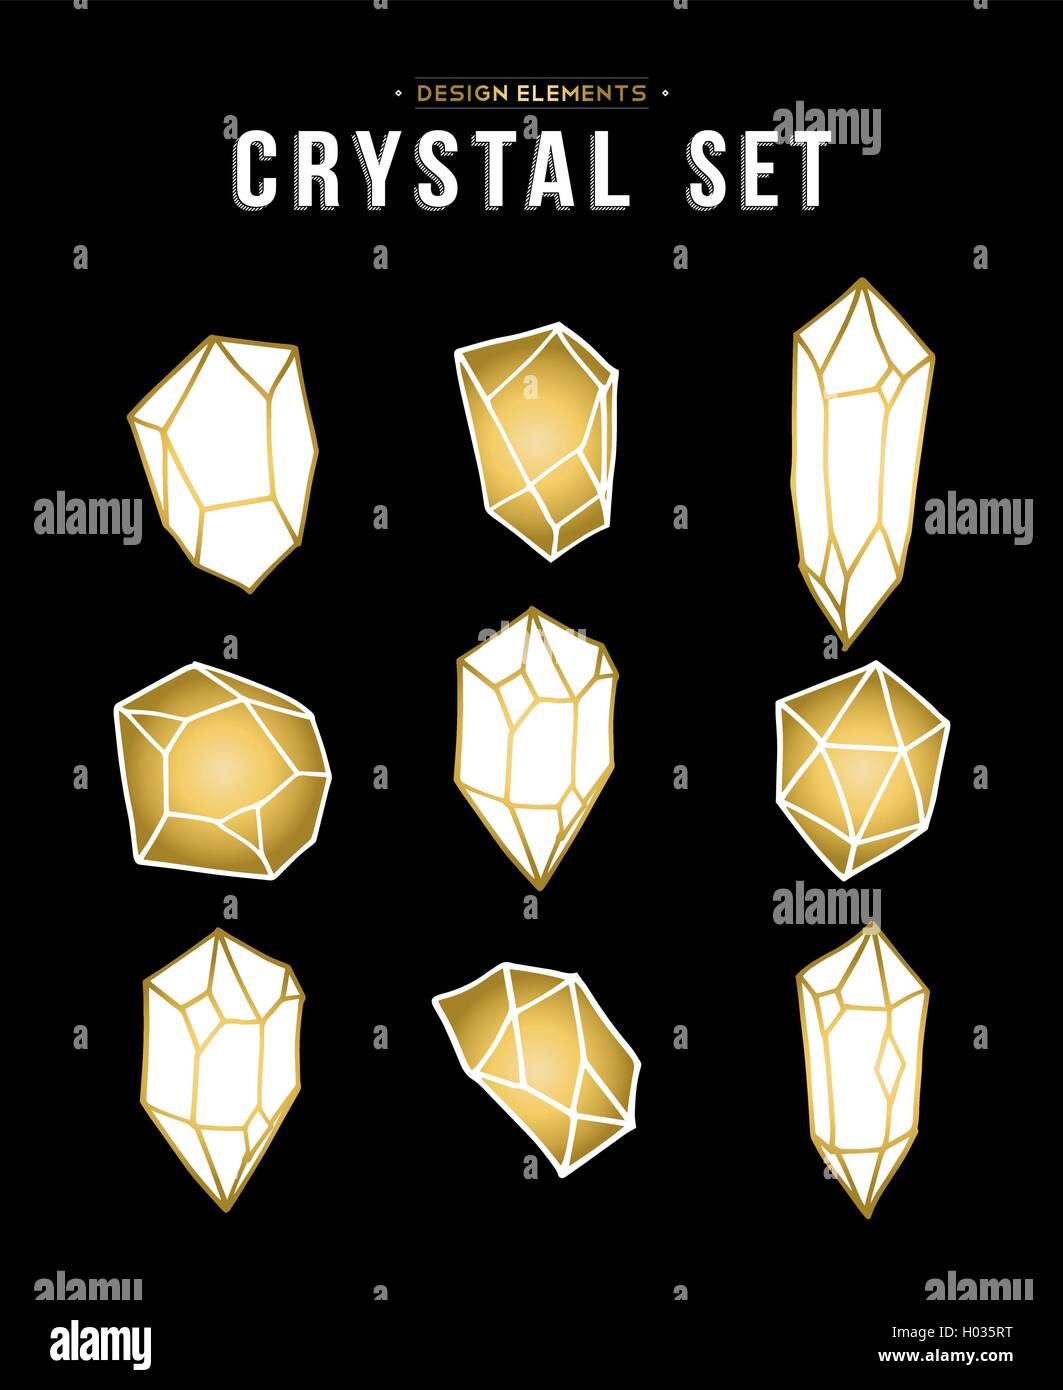 Gold Farbe Kristall Mineral Stein Elemente gesetzt, einfache Hand gezeichnet Diamond Rock Symbolsammlung. EPS10 Vektor. Stock Vektor